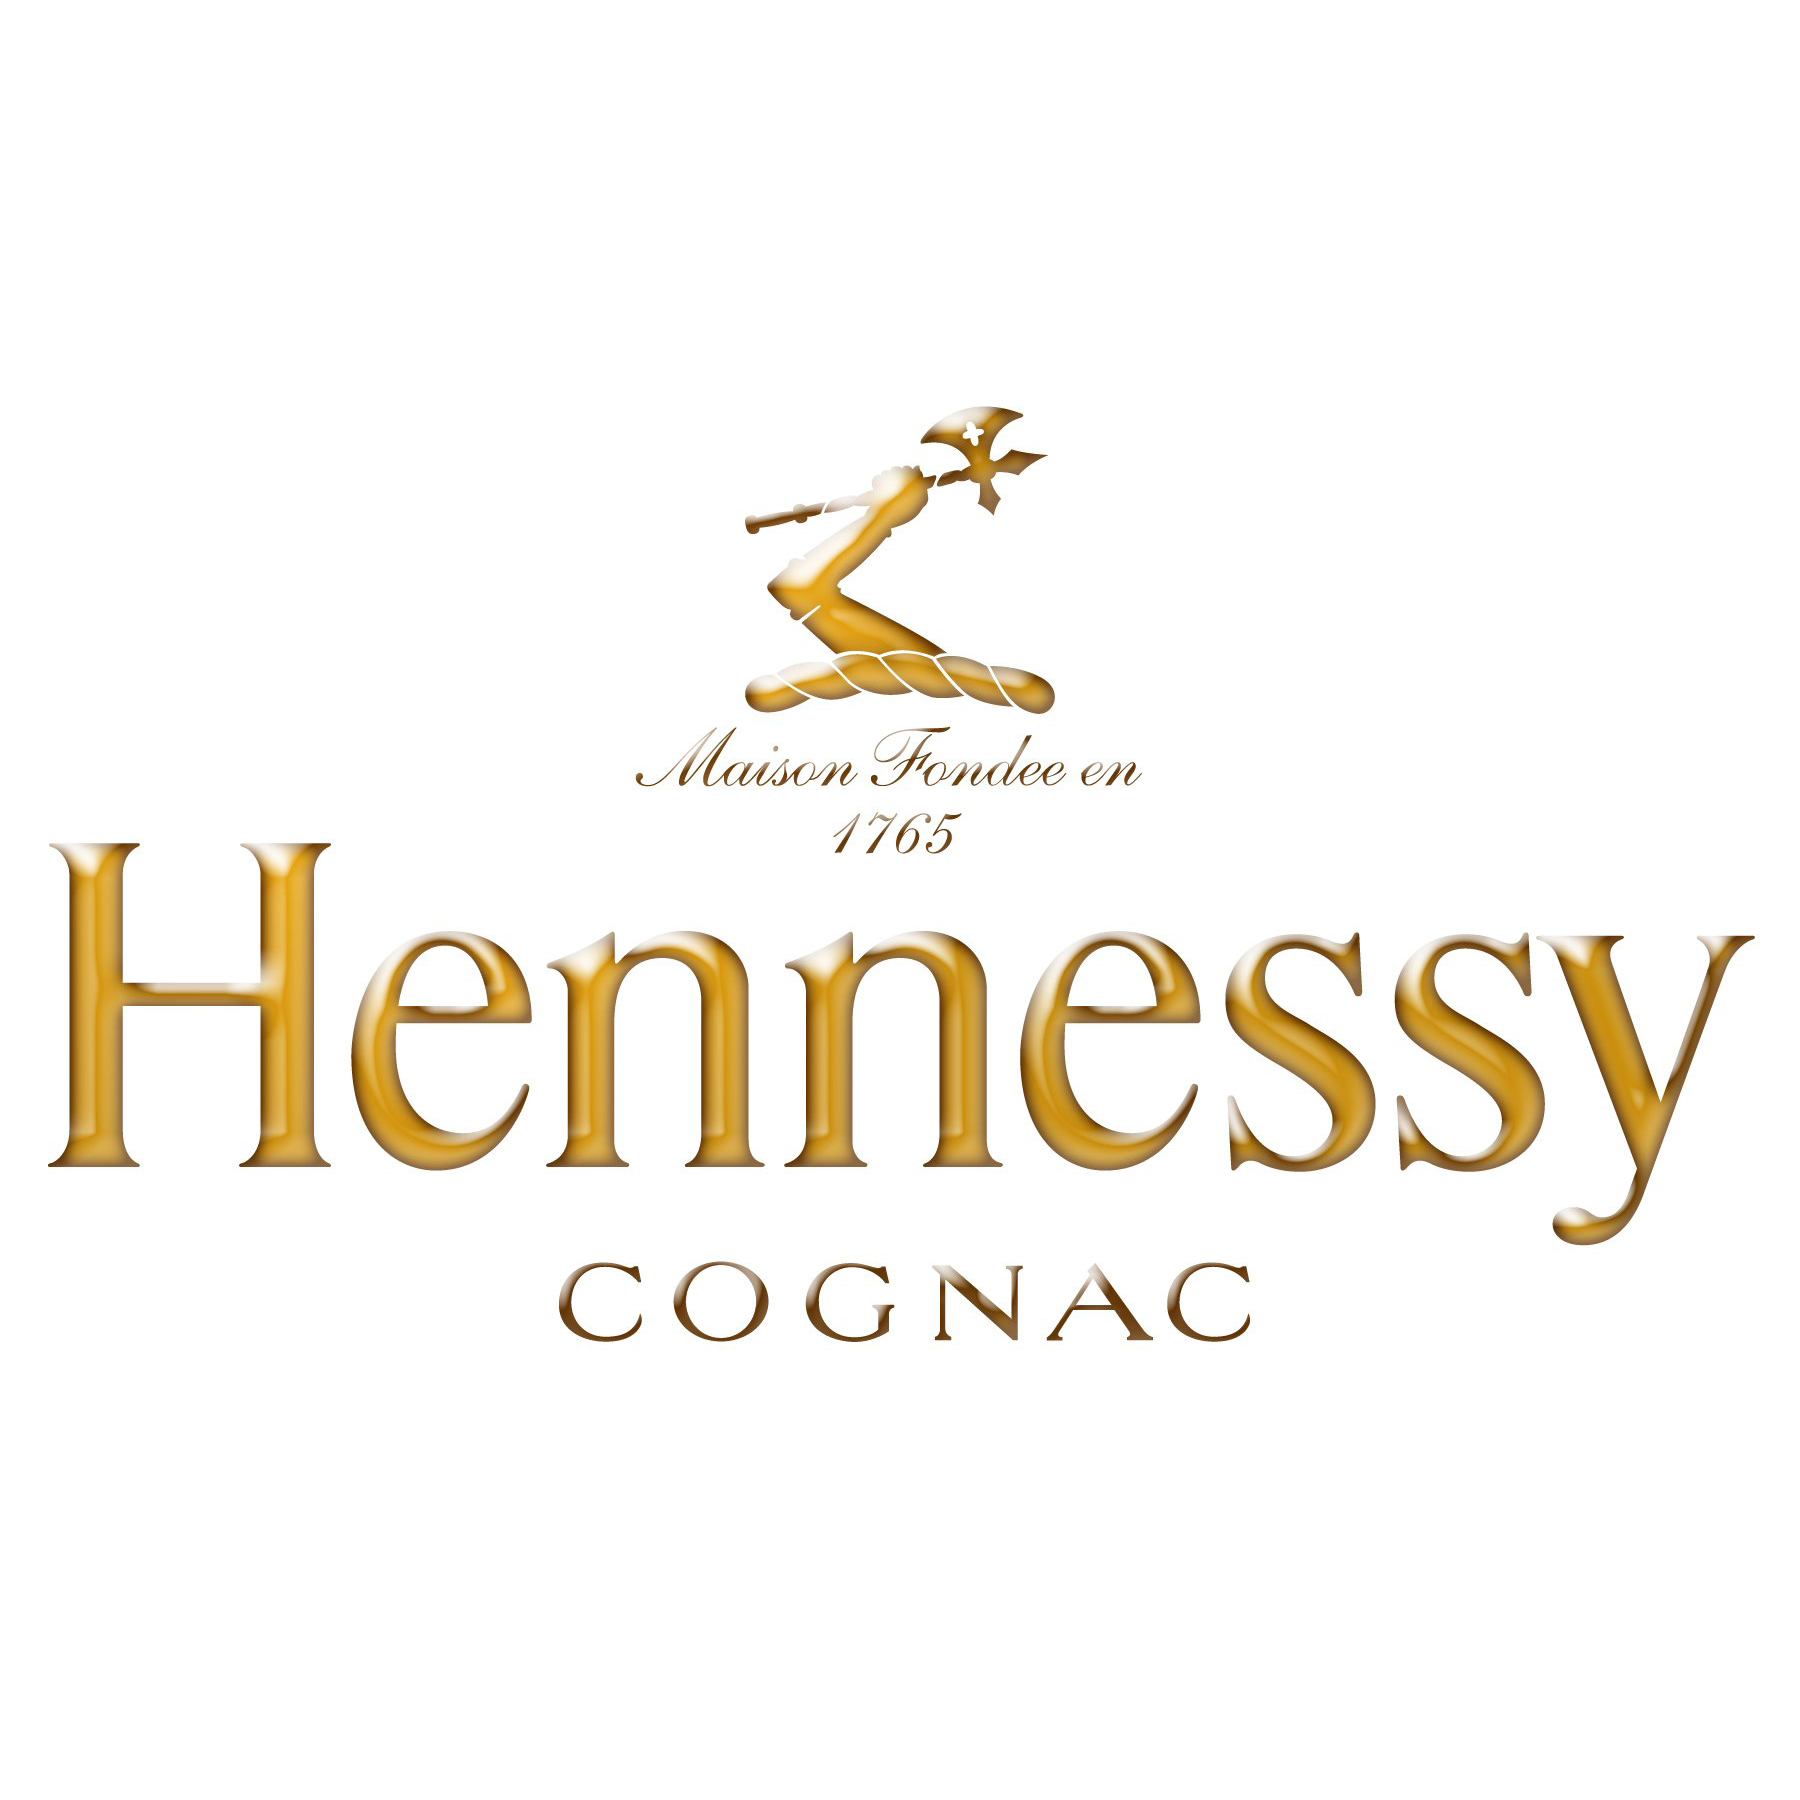 Коньяк Hennessy VS 4 роки витримки 0,35л 40% у подарунковій упаковці в Україні